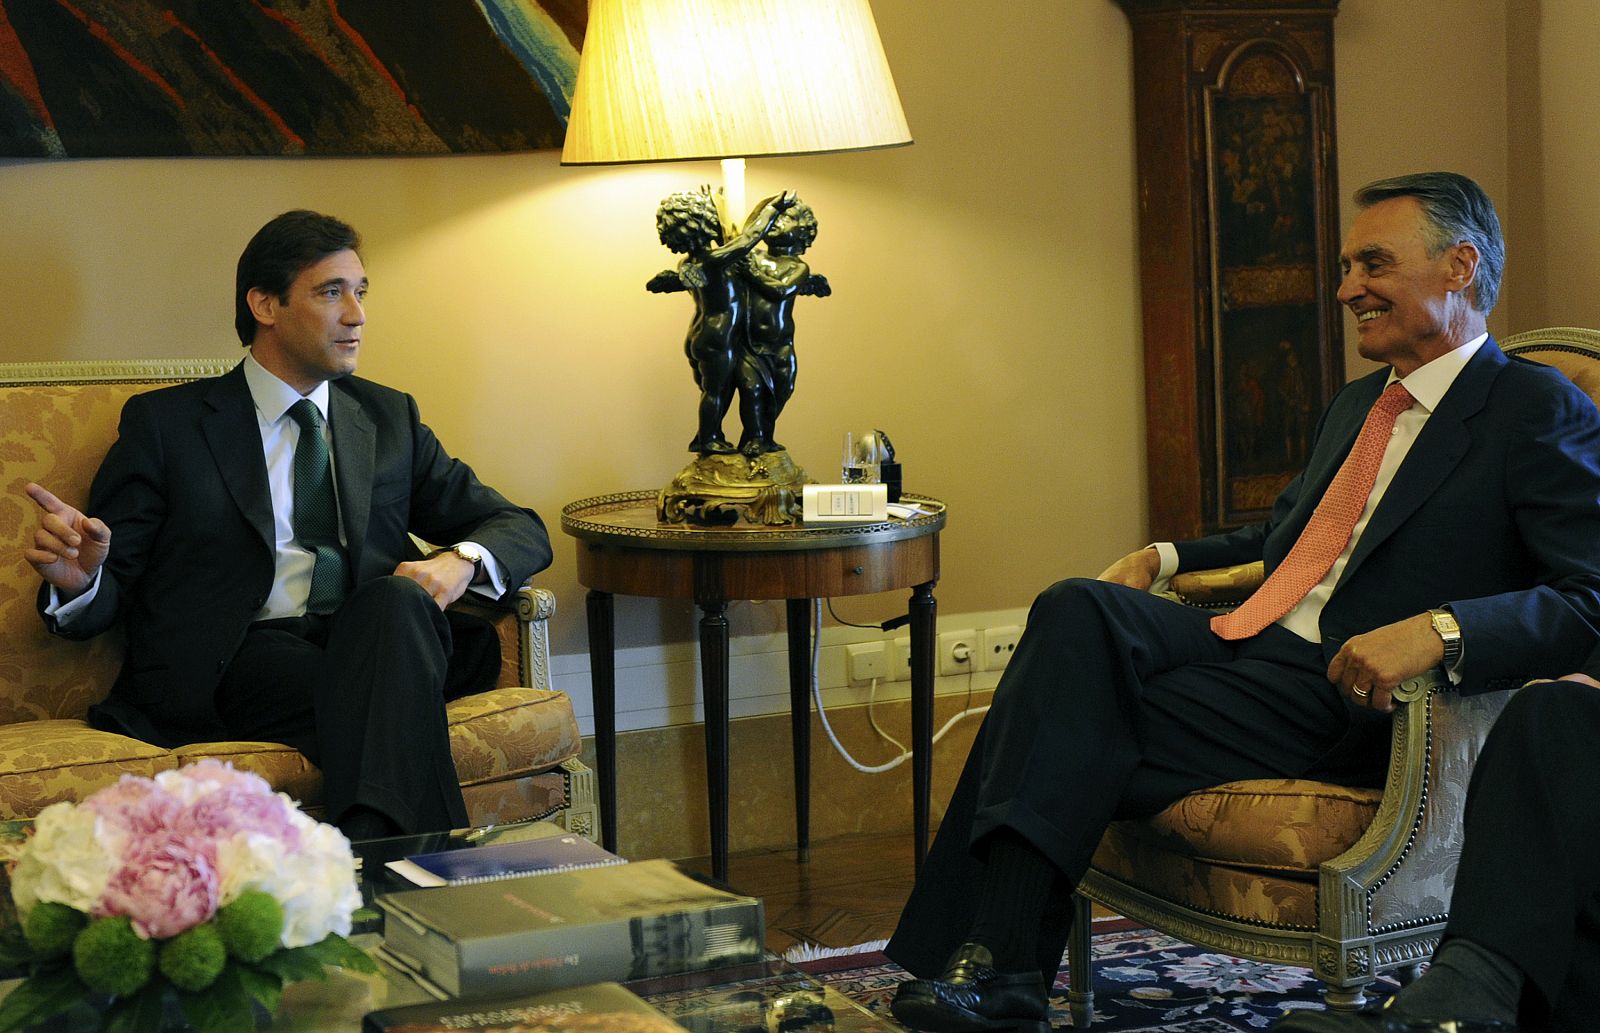 El líder del Partido Socialdemócrata, Pedro Passos Coelho, conversa con el presidente portugués Cavaco Silva durante una reunión en el palacio de Belem, en Lisboa.